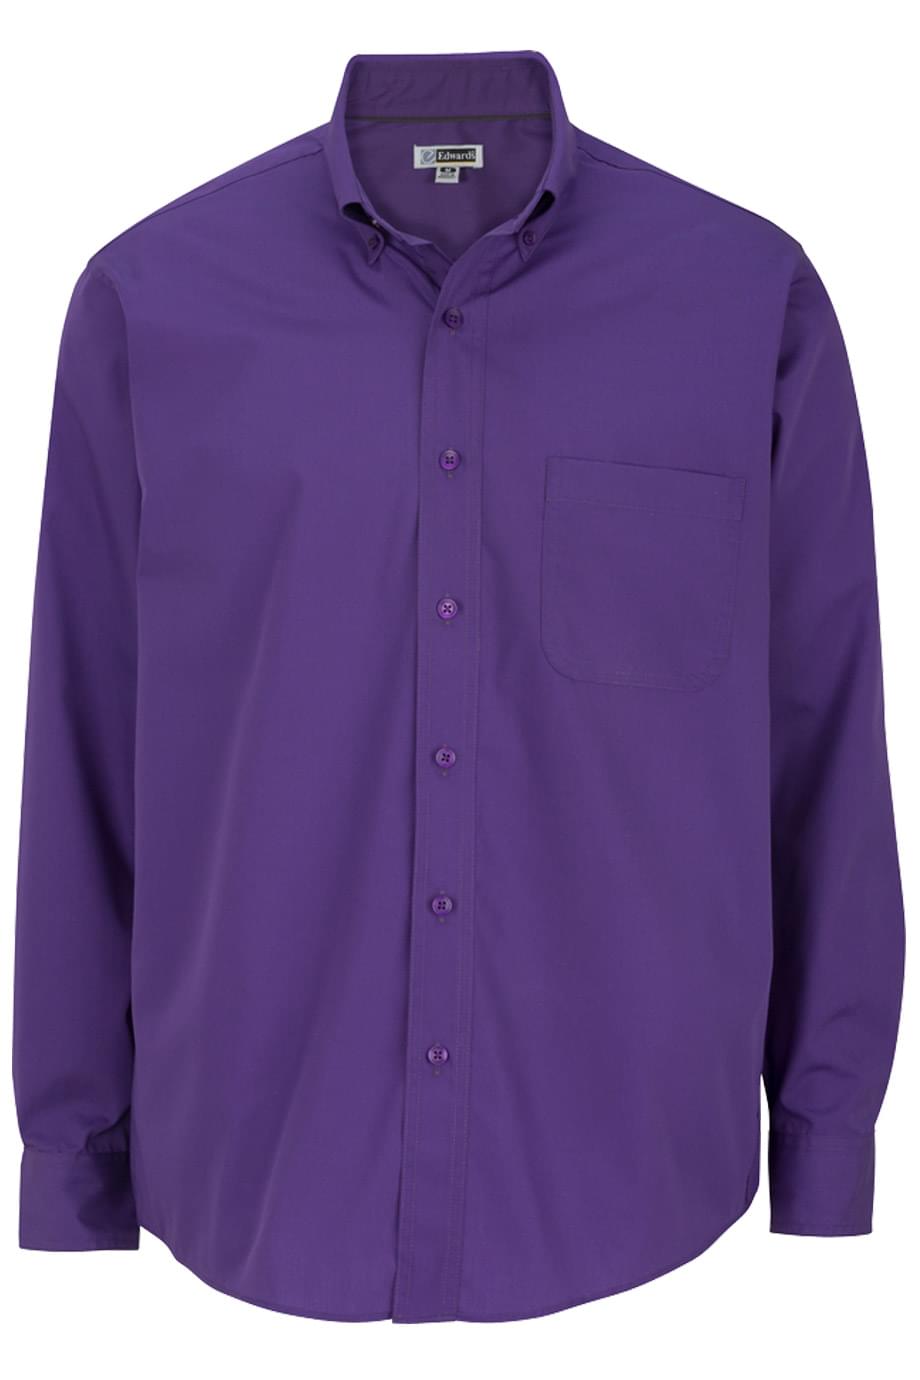 Edwards Garment 1295 - Men's Long Sleeve Soft Touch Poplin Shirt